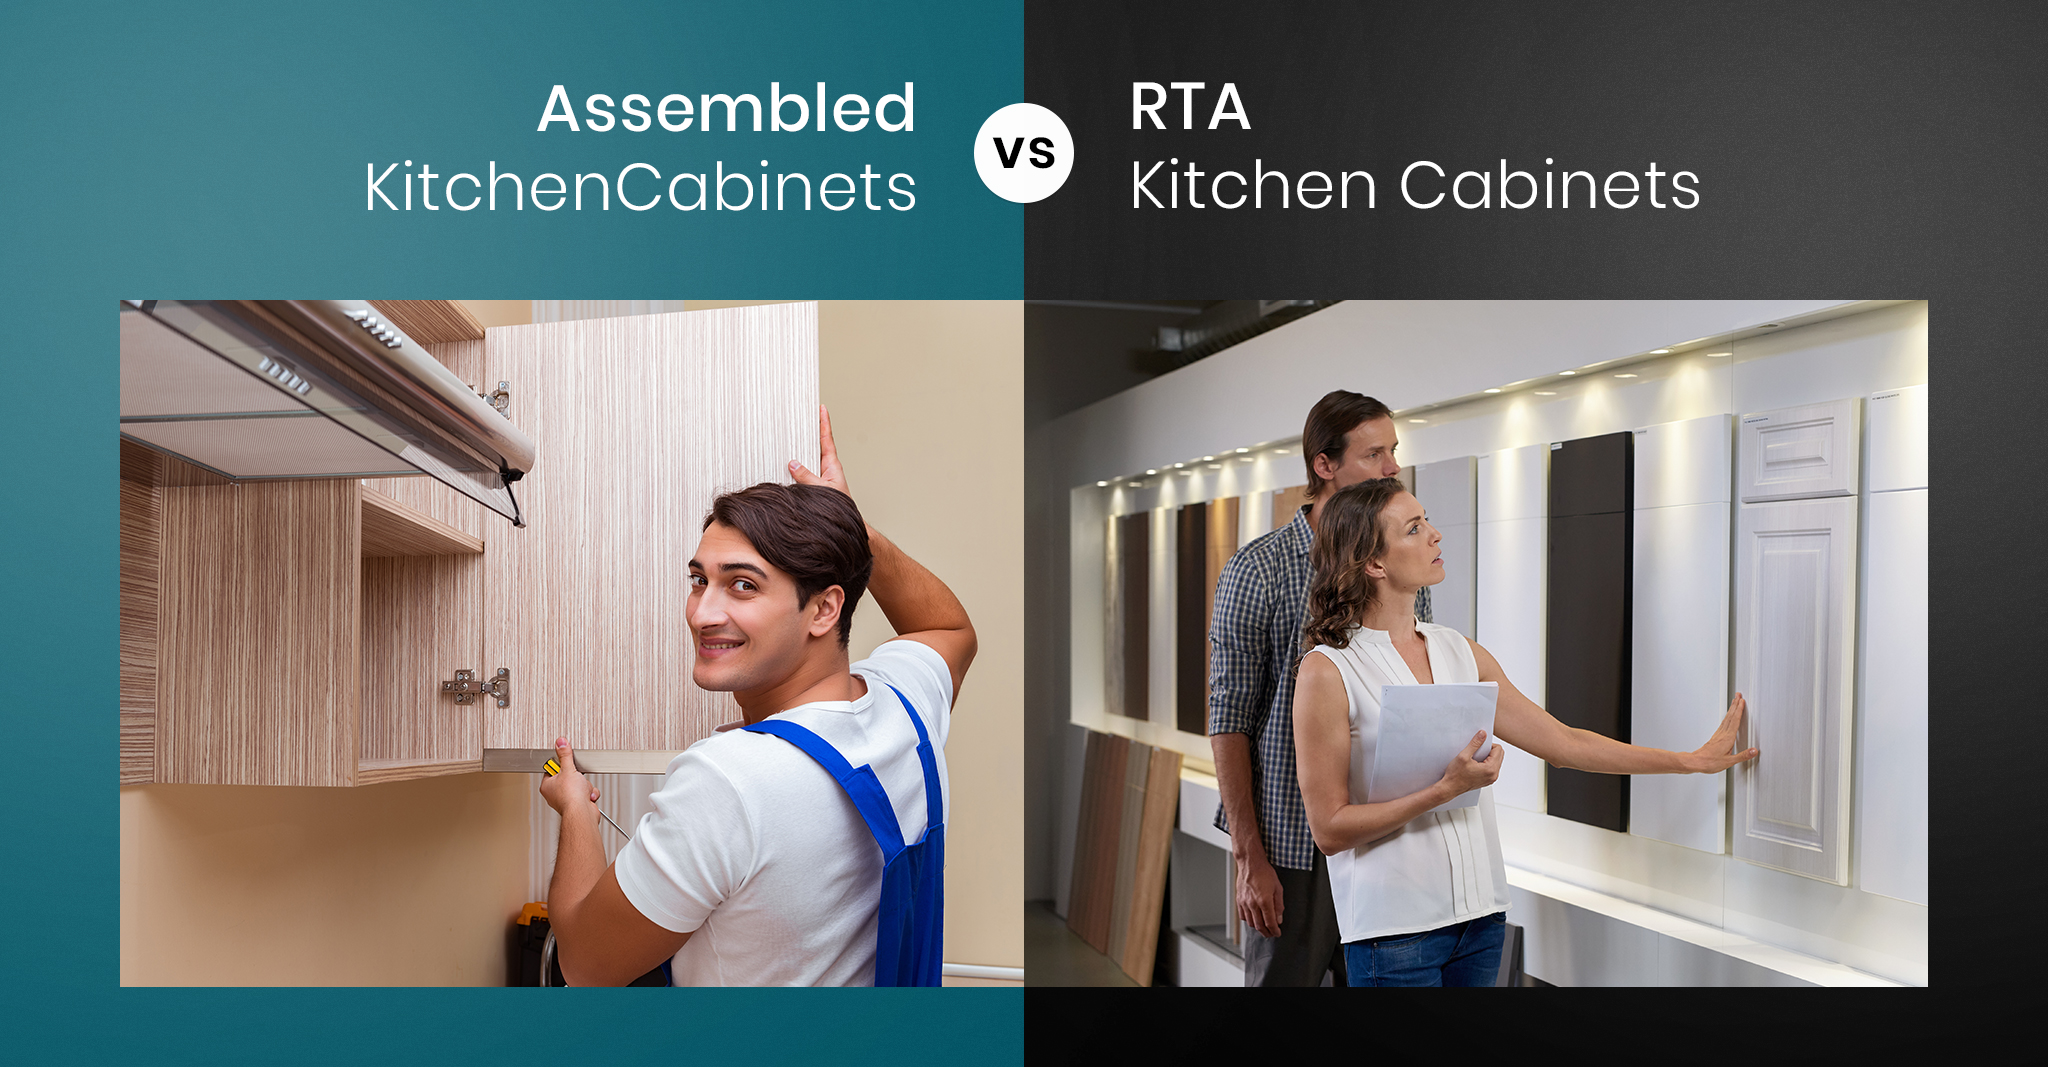 Rta Kitchen Cabinets Vs Assembled